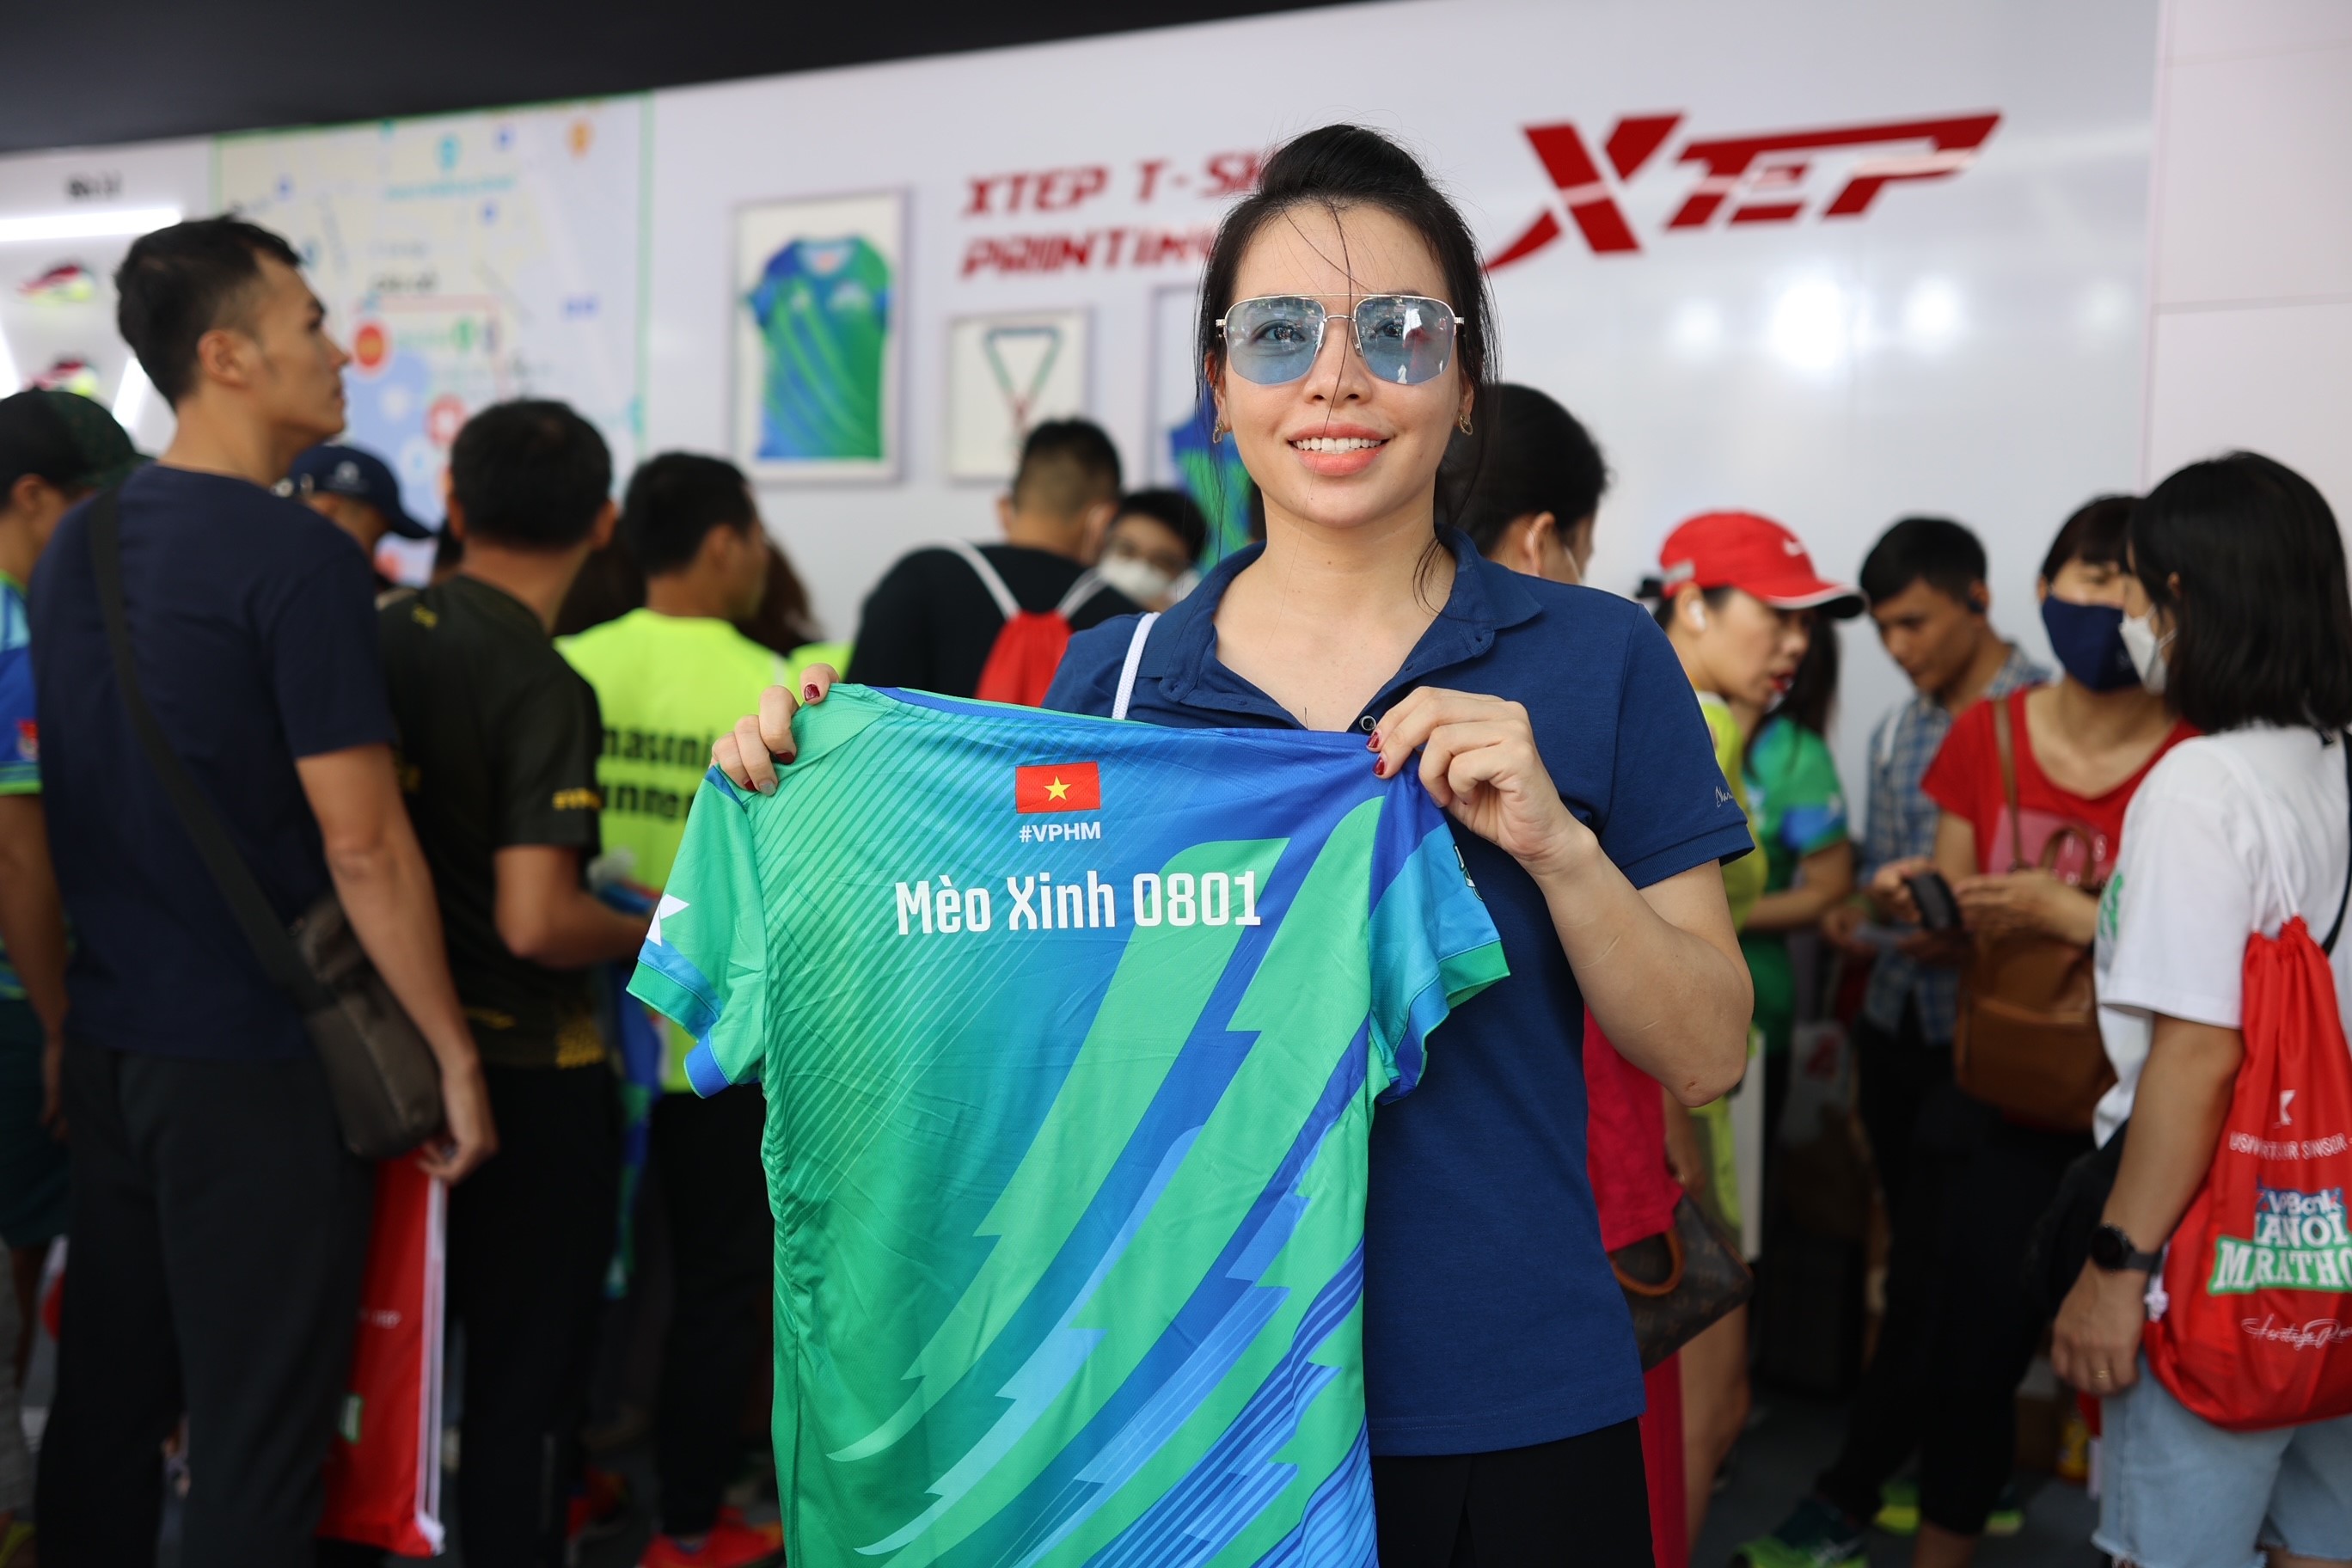 Được tổ chức lần đầu vào năm 2018, VPBank Hanoi Marathon là giải chạy chính thức mang tính biểu tượng của thành phố Hà Nội. Giải chạy được tổ chức bởi Ngân hàng TMCP Việt Nam Thịnh Vượng - VPBank và Công ty DHA, trở thành hoạt động văn hóa, thể thao được Ủy ban Nhân dân thành phố Hà Nội chấp thuận, đưa vào kế hoạch tổ chức thường niên và nằm trong chuỗi các sự kiện kỷ niệm Ngày giải phóng Thủ đô 10/10.